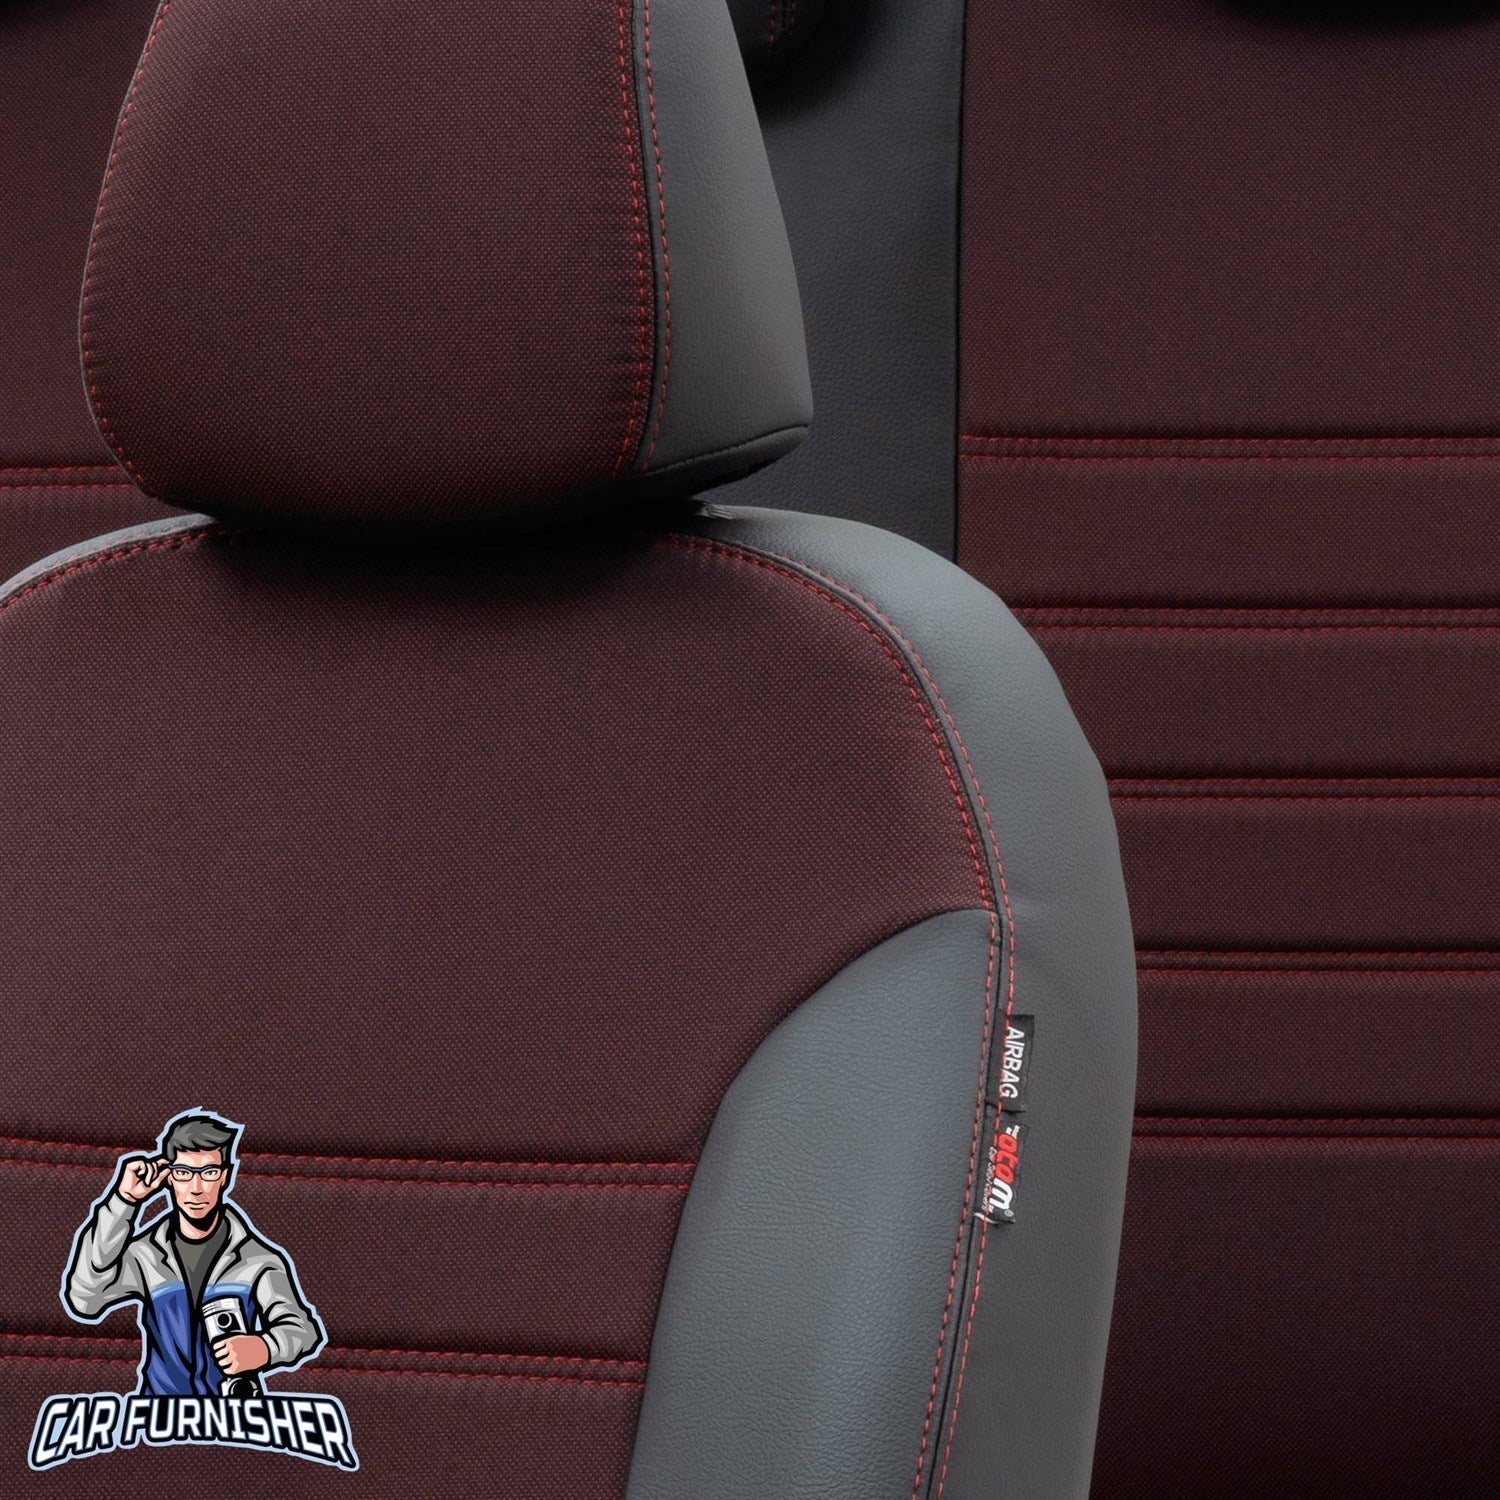 Daewoo Tacuma Seat Covers Paris Leather & Jacquard Design Red Leather & Jacquard Fabric